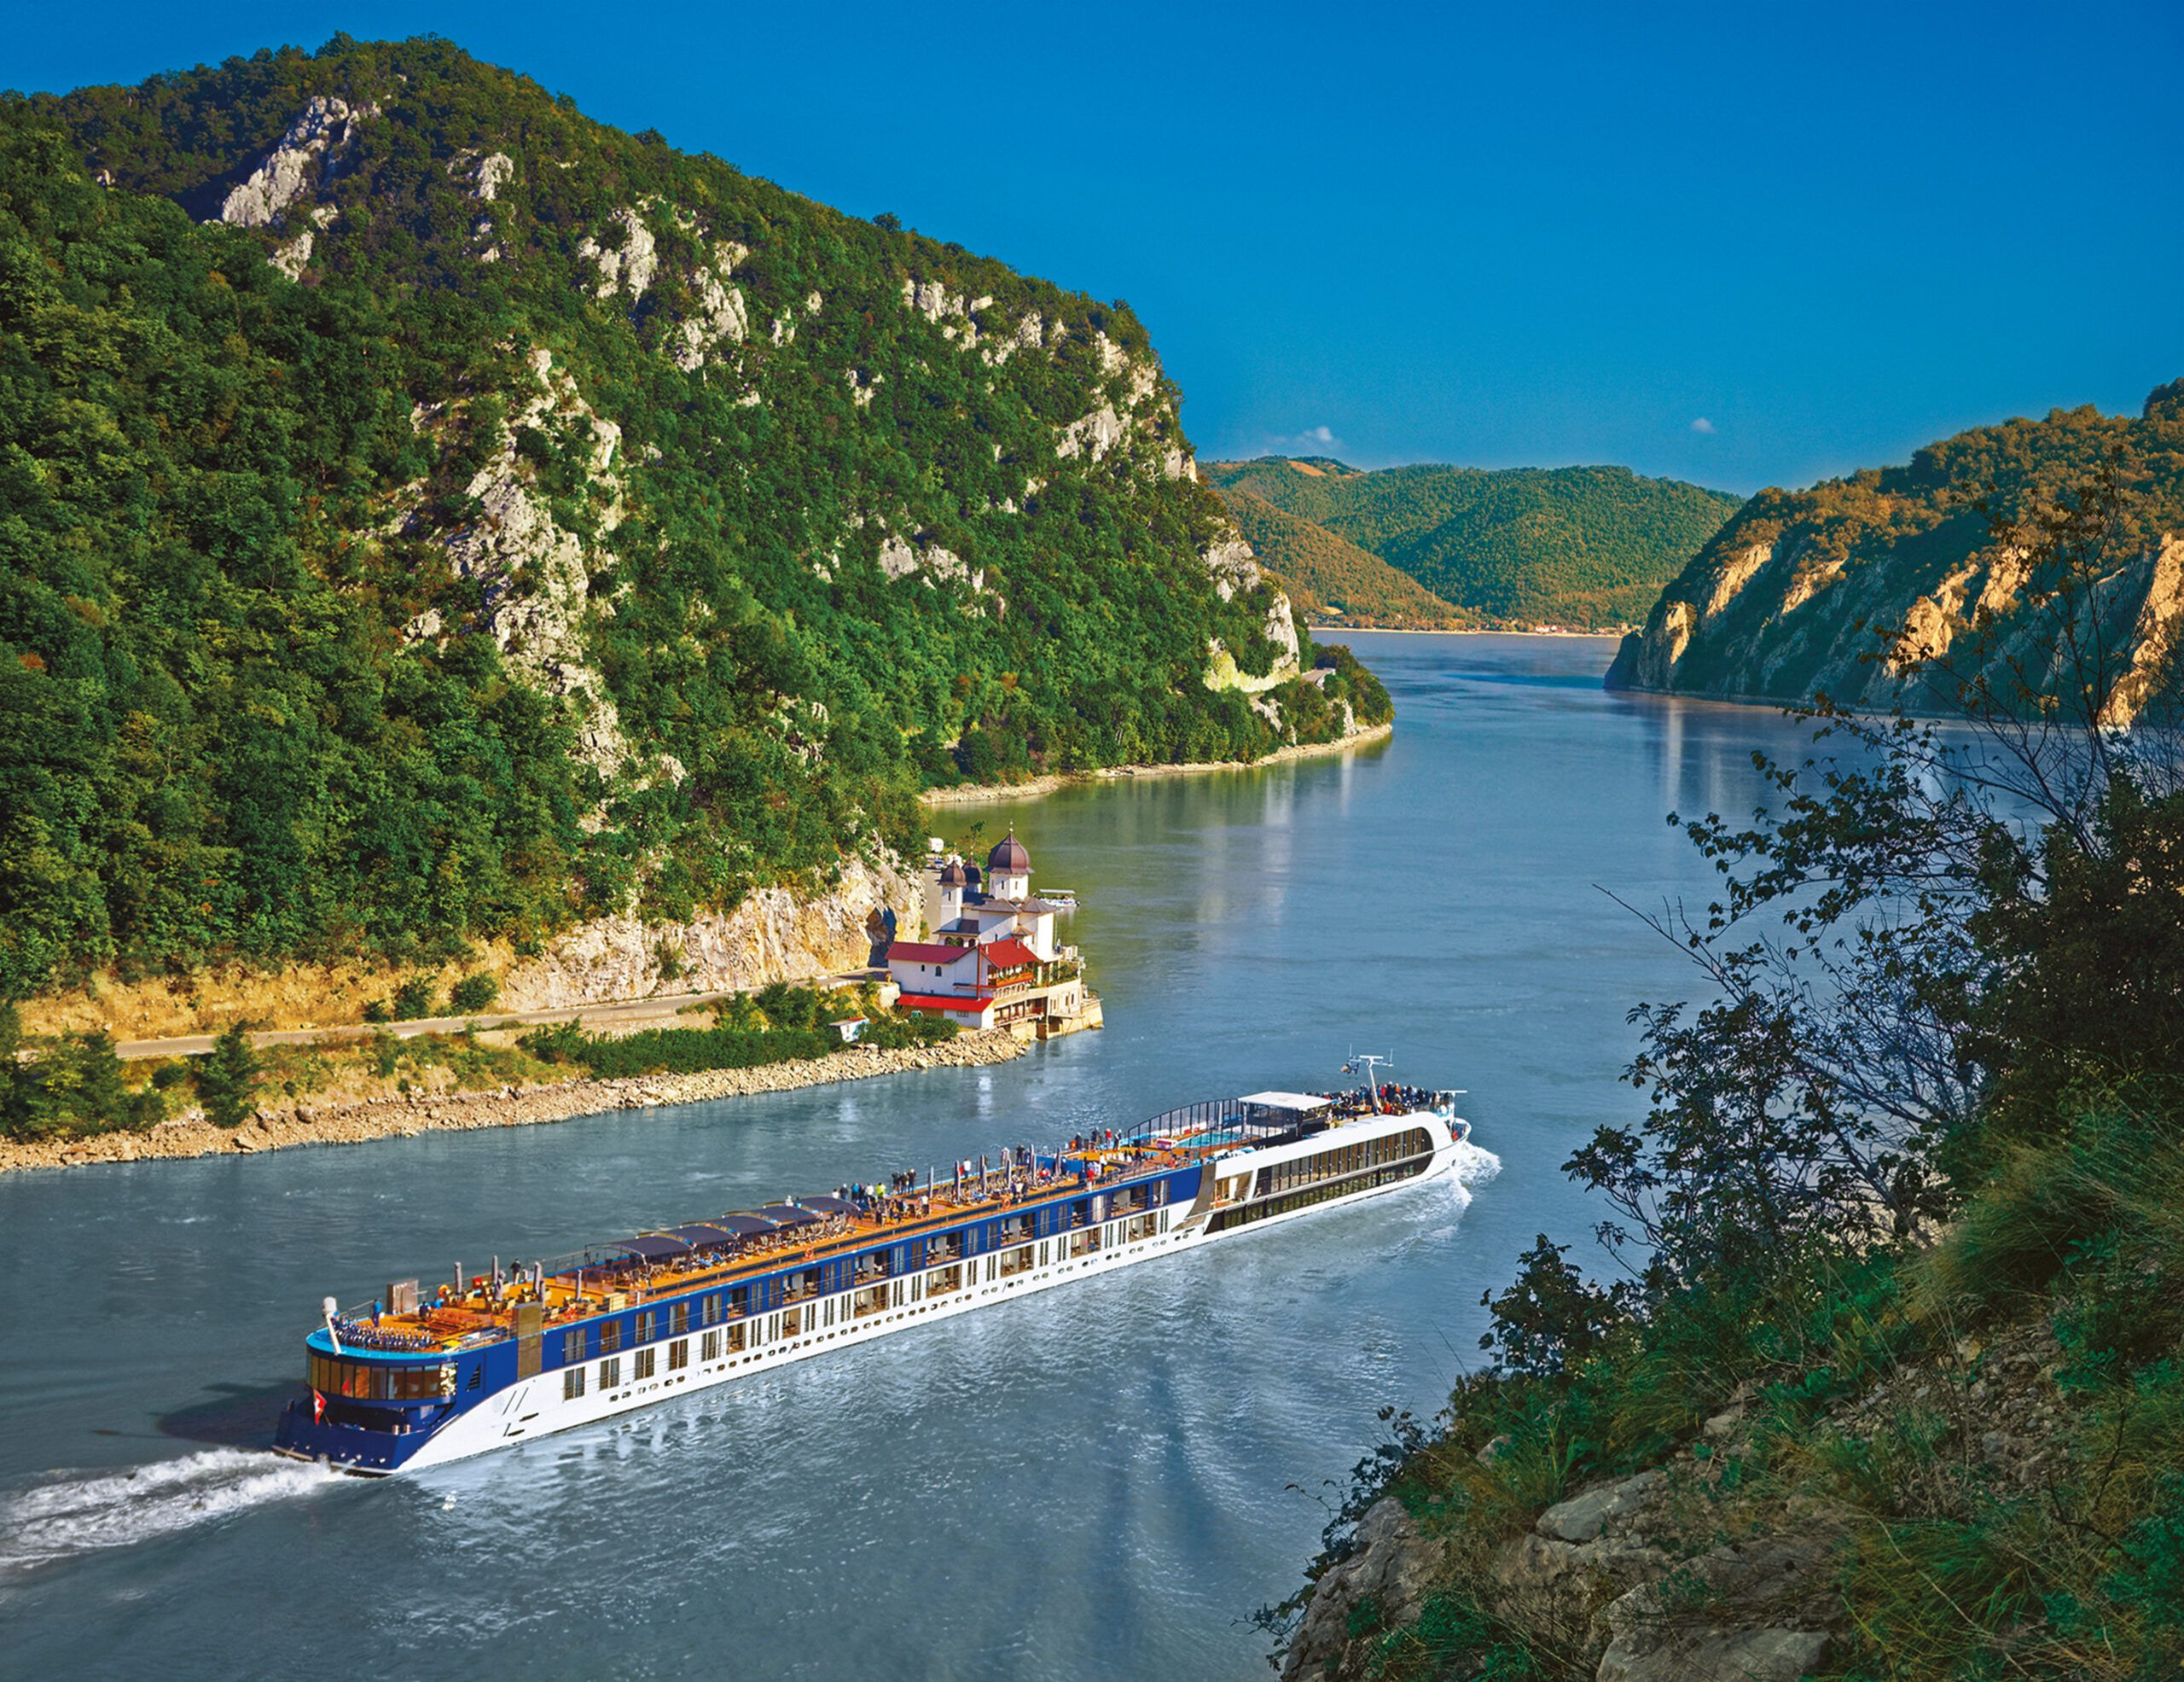 Danube river. Serbia and Romania border.